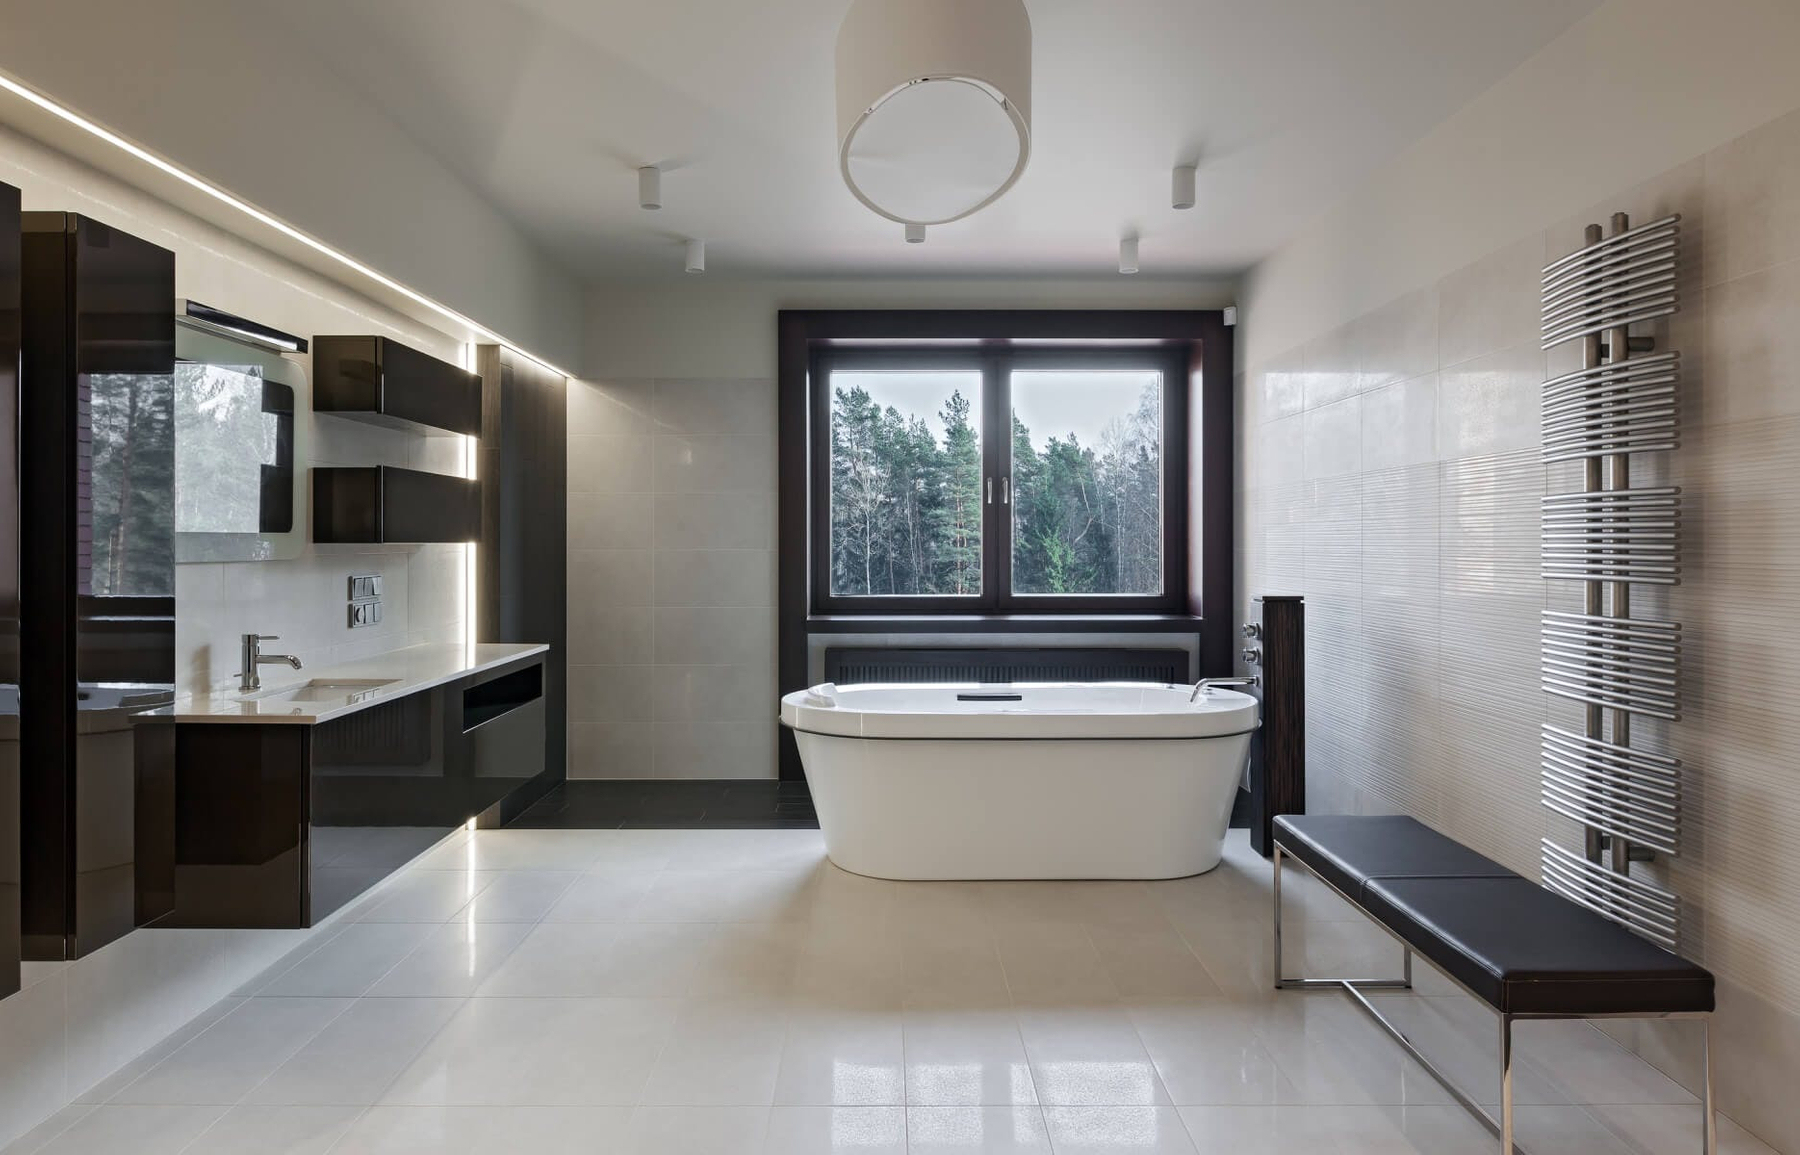 Salle de bain rénovée avec miroir et placard en bois brut